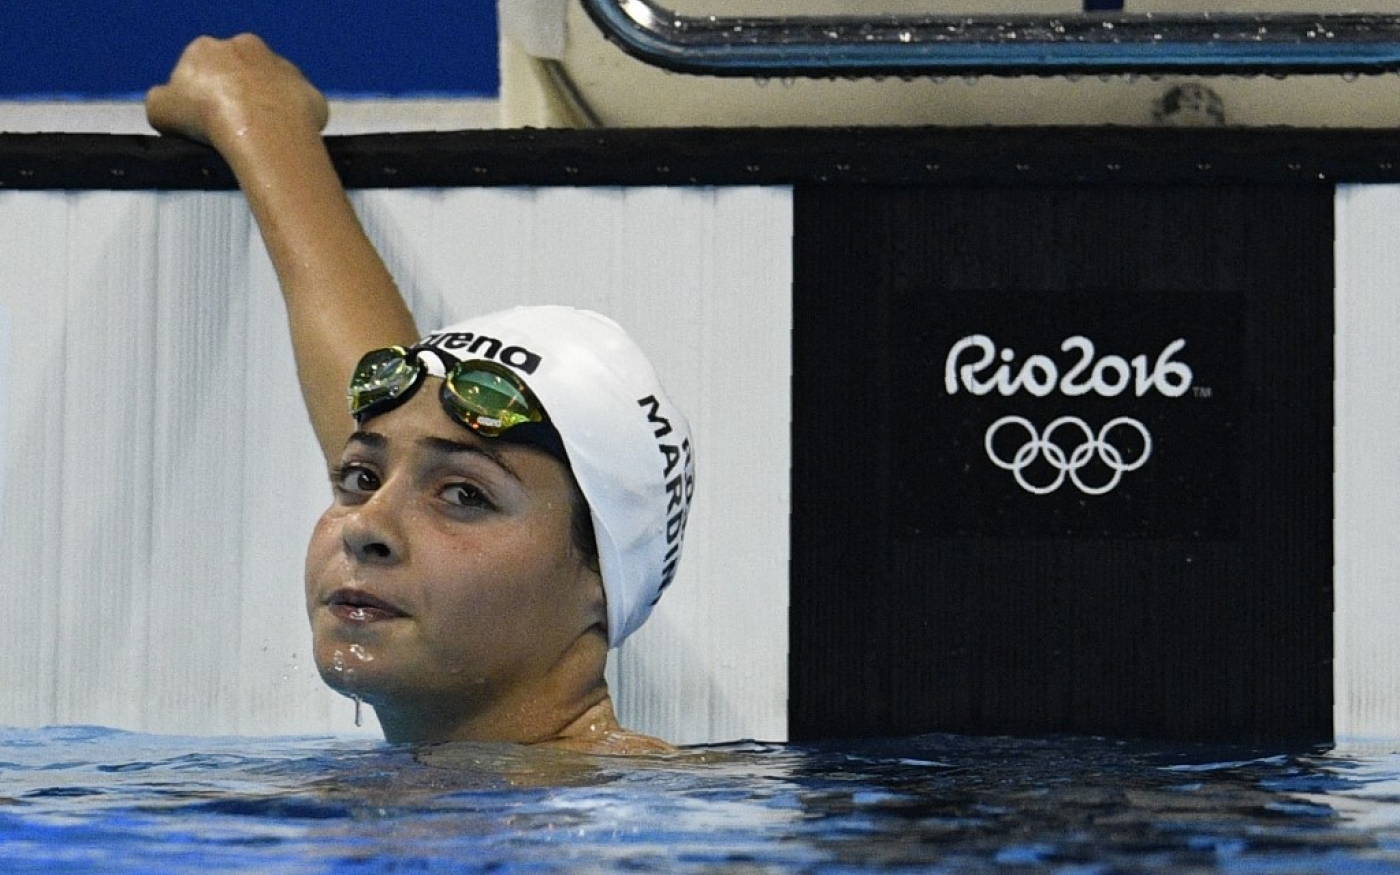 Yusra Mardini, de l’équipe olympique des réfugiés, participe à l’épreuve féminine du 100 m papillon lors de l’épreuve de natation aux Jeux olympiques de Rio 2016 au Stade olympique aquatique de Rio de Janeiro, le 6 août 2016 (AFP/Martin Bureau)